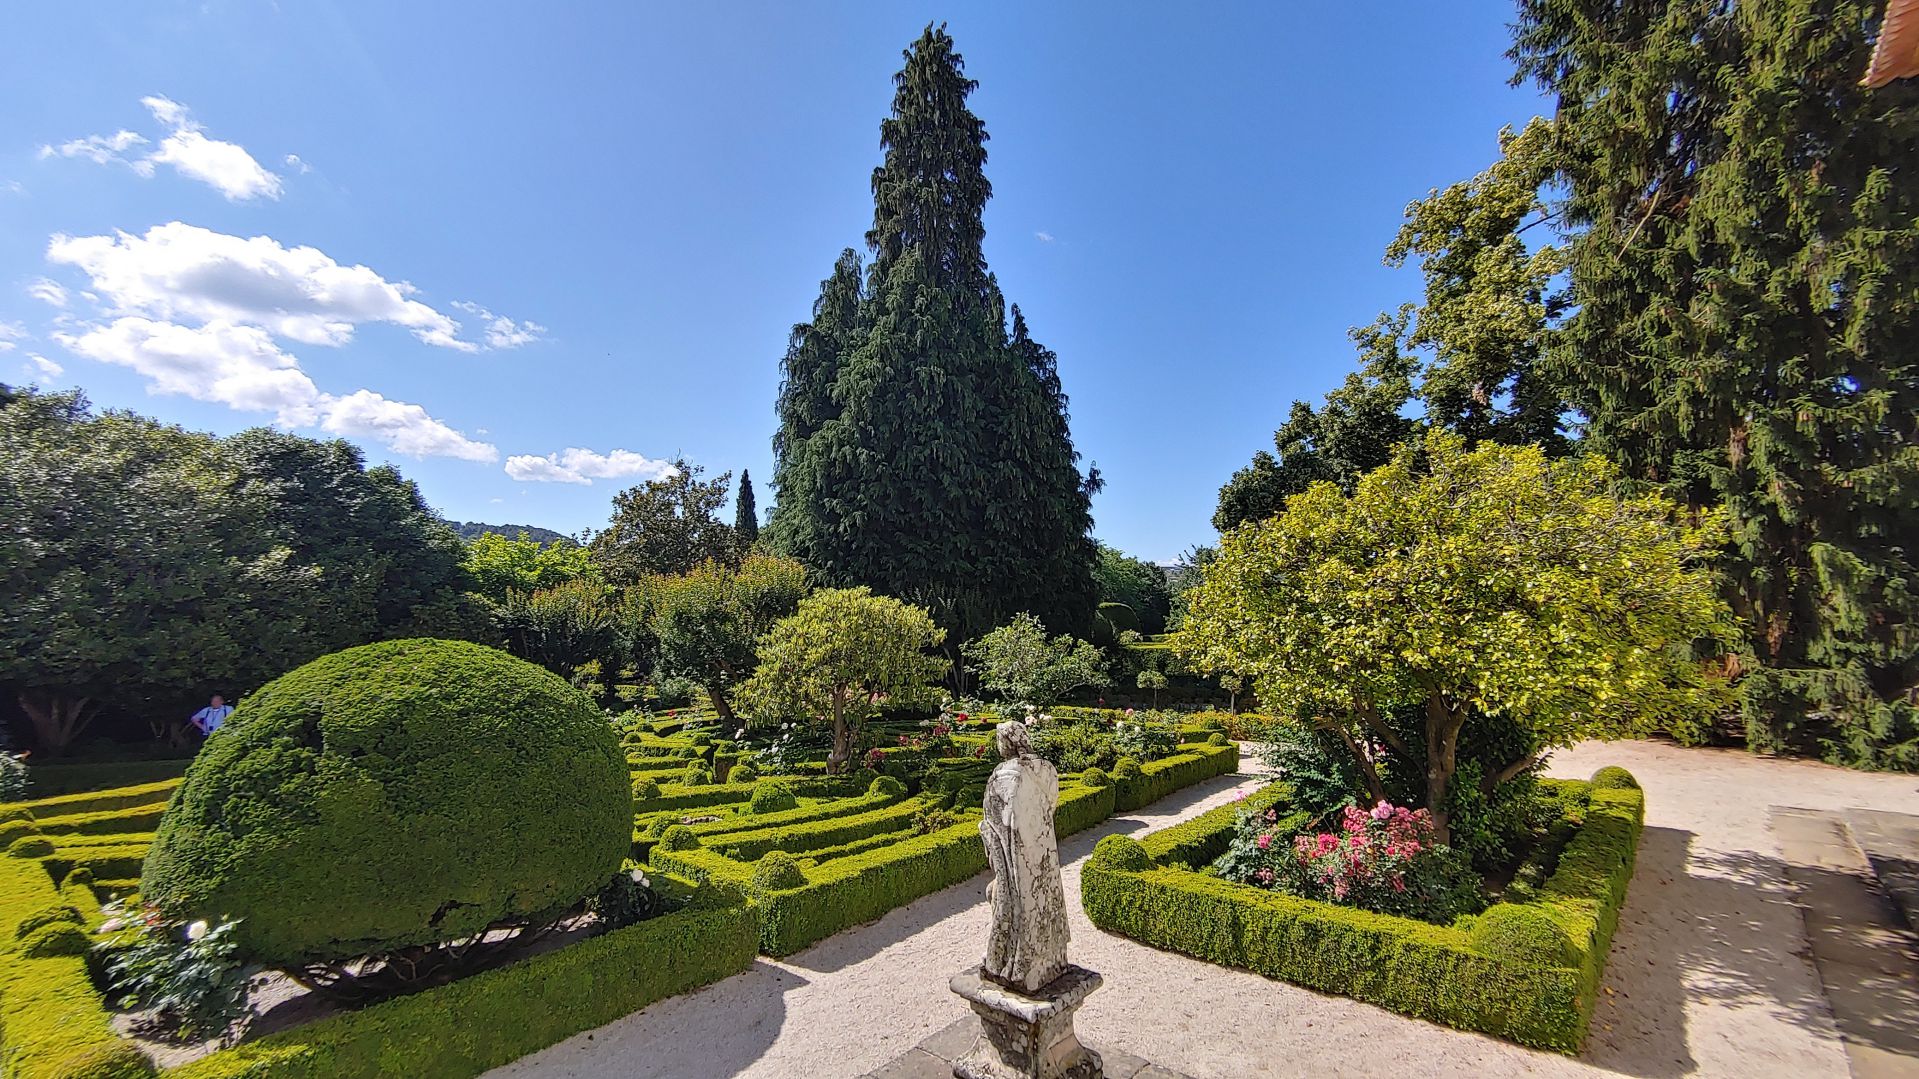 MATEUS - der Garten des Schlosses Mateus gilt als einer der schönsten Gärten in Portugal